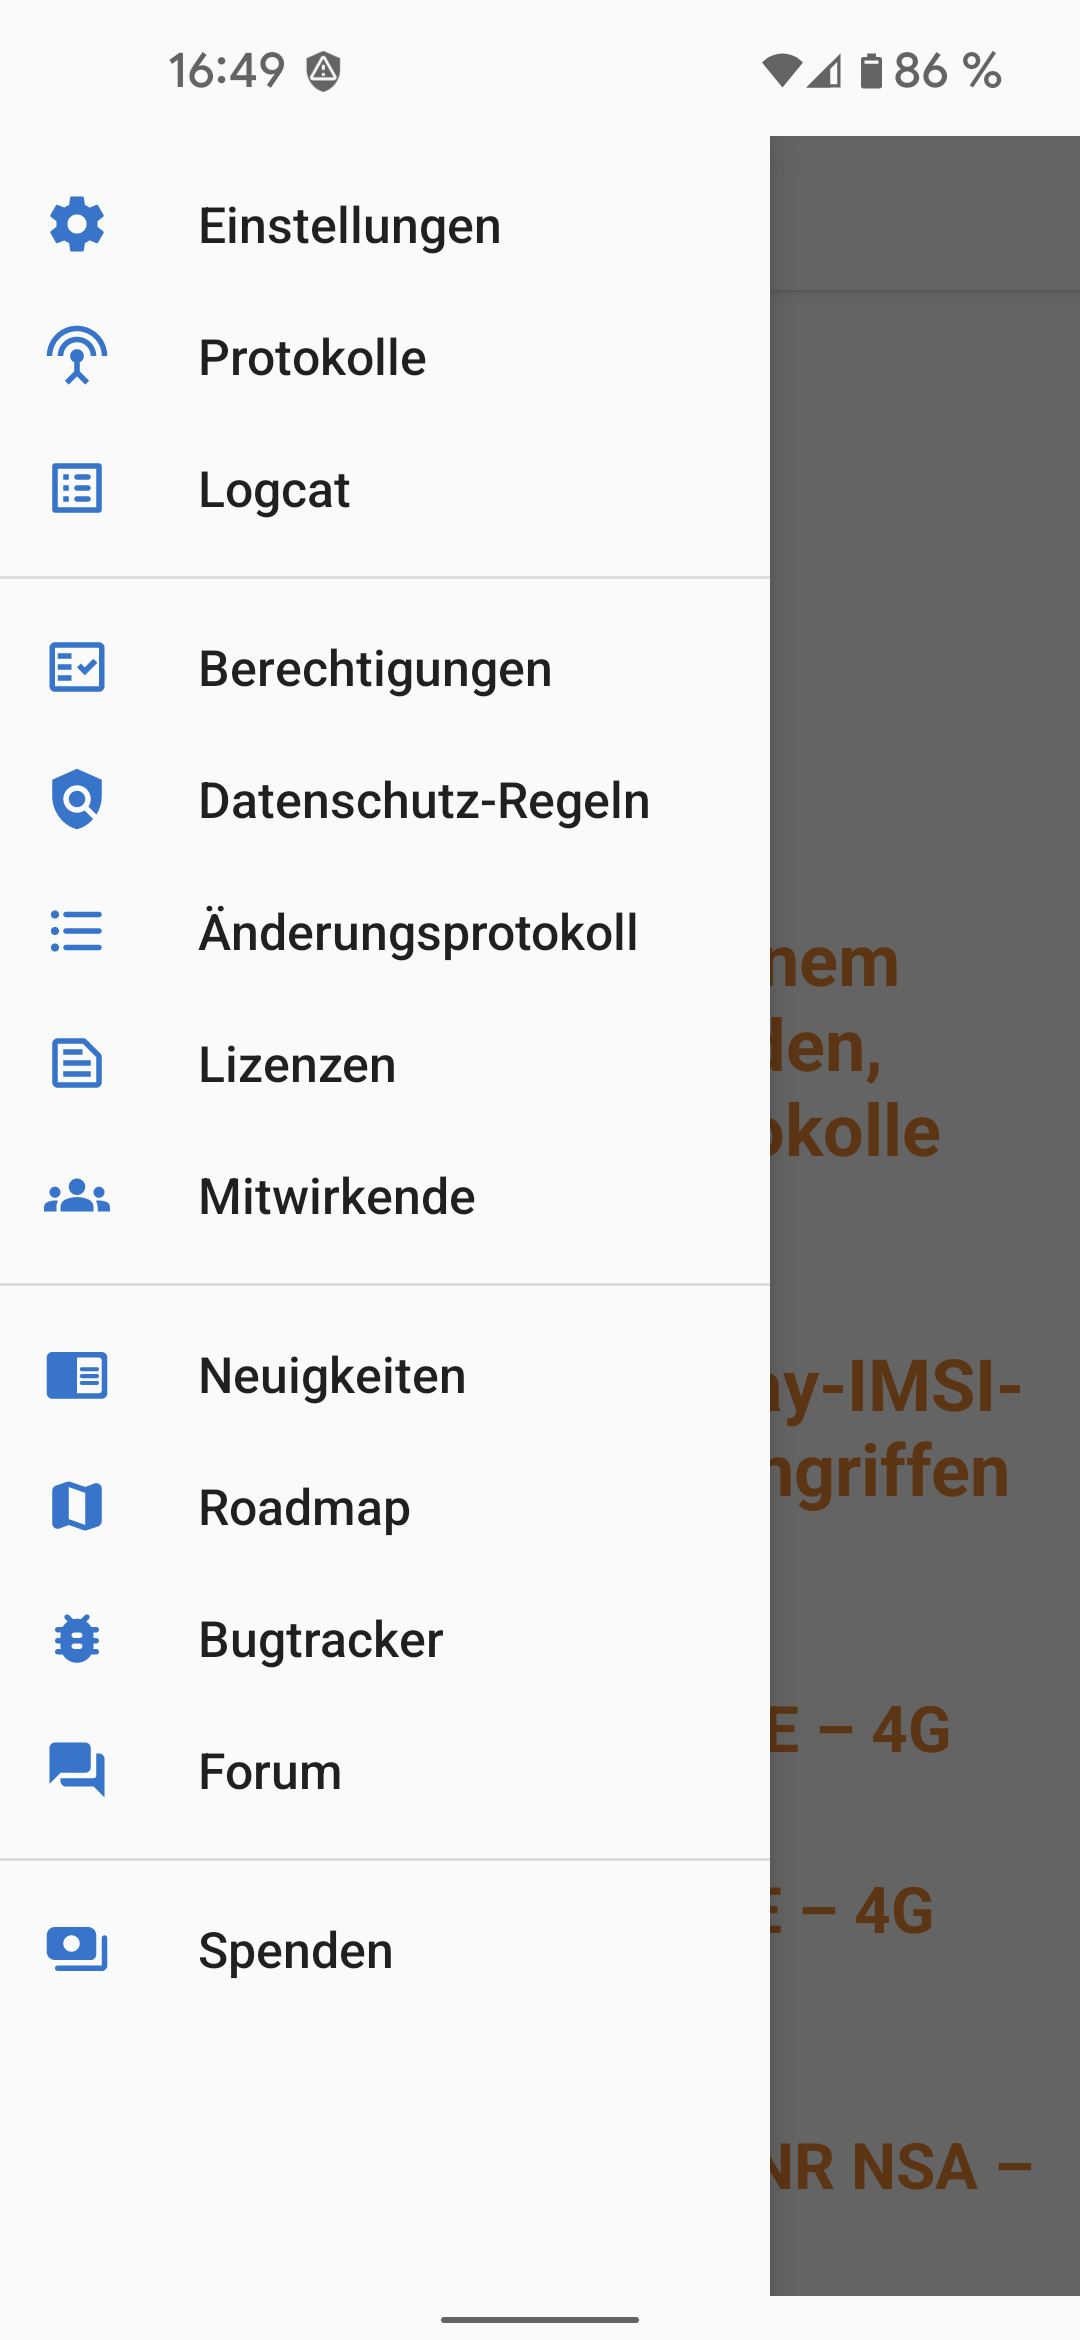 fastlane/metadata/android/de-DE/images/phoneScreenshots/04-NavigationMenu-de.png